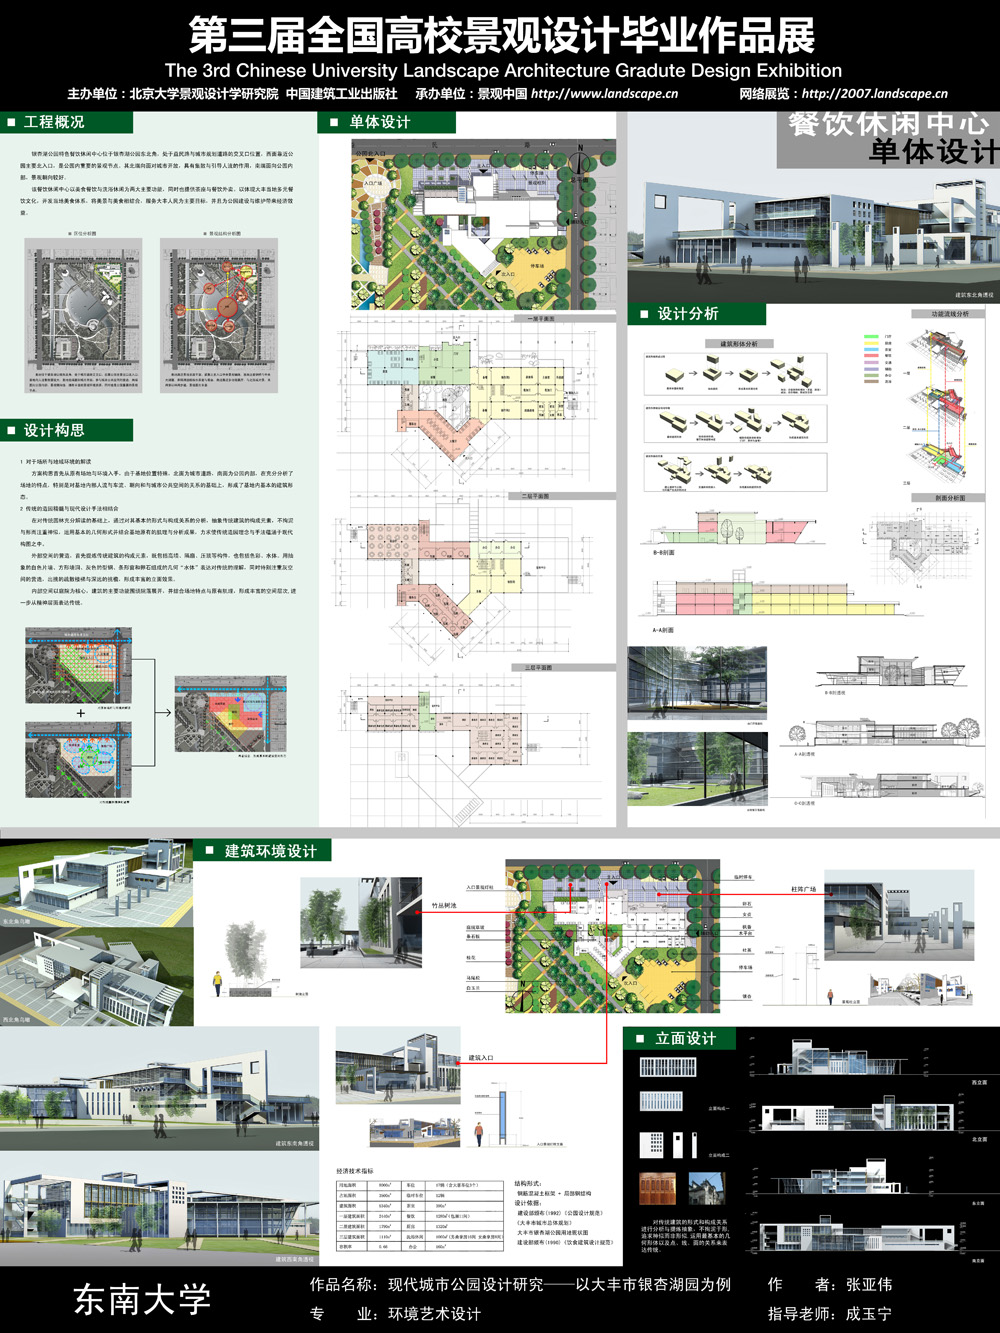 现代城市公园设计研究---以大丰市银杏湖公园为例-2